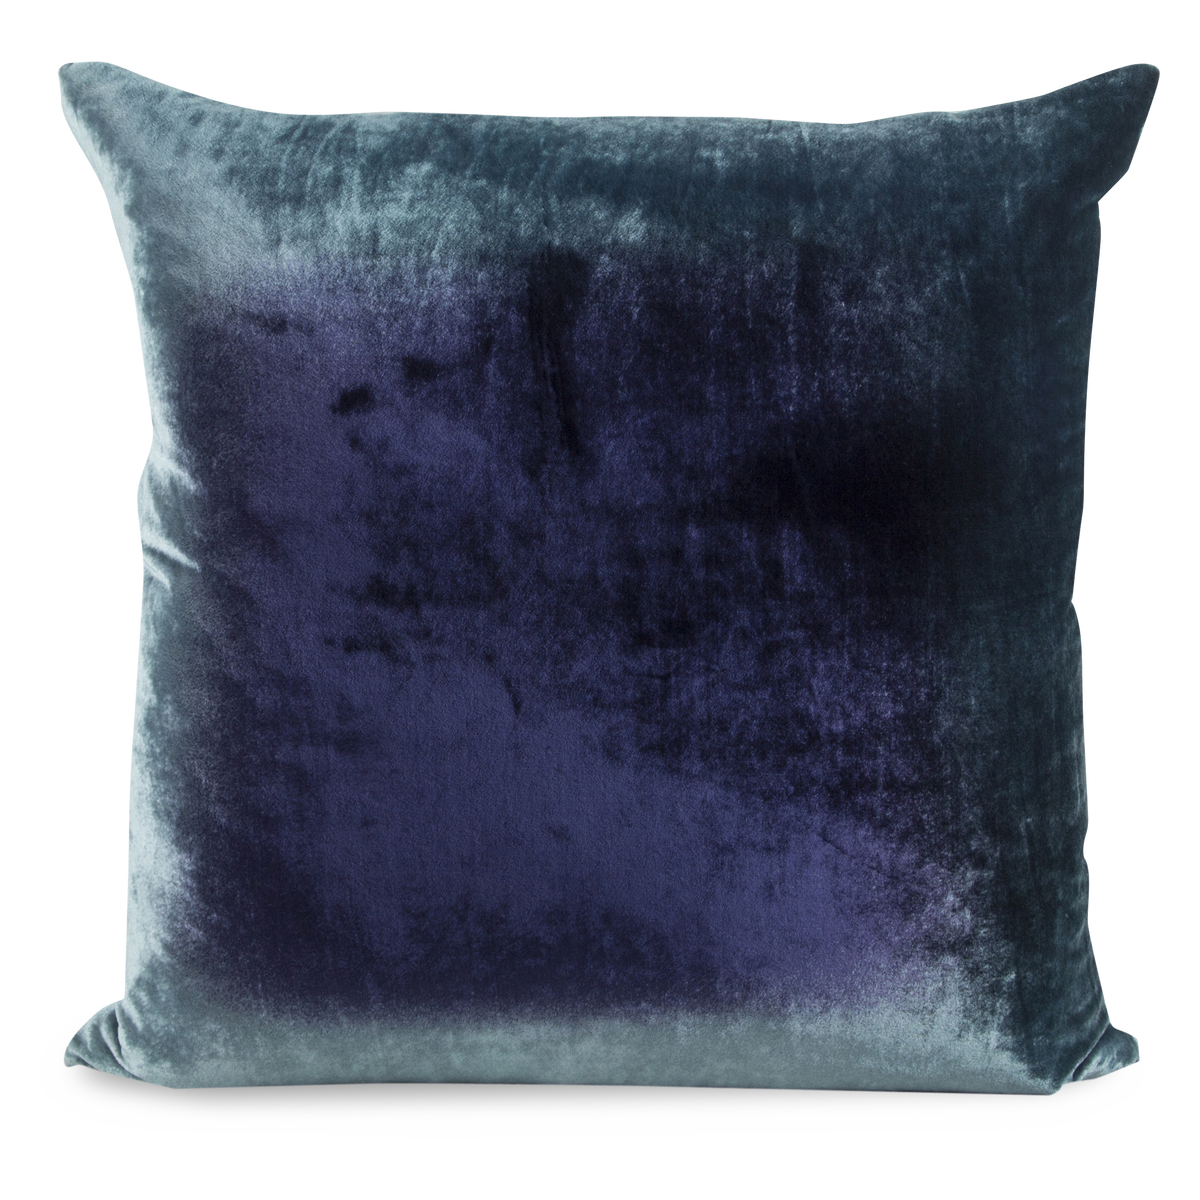 Ombre Velvet Pillow